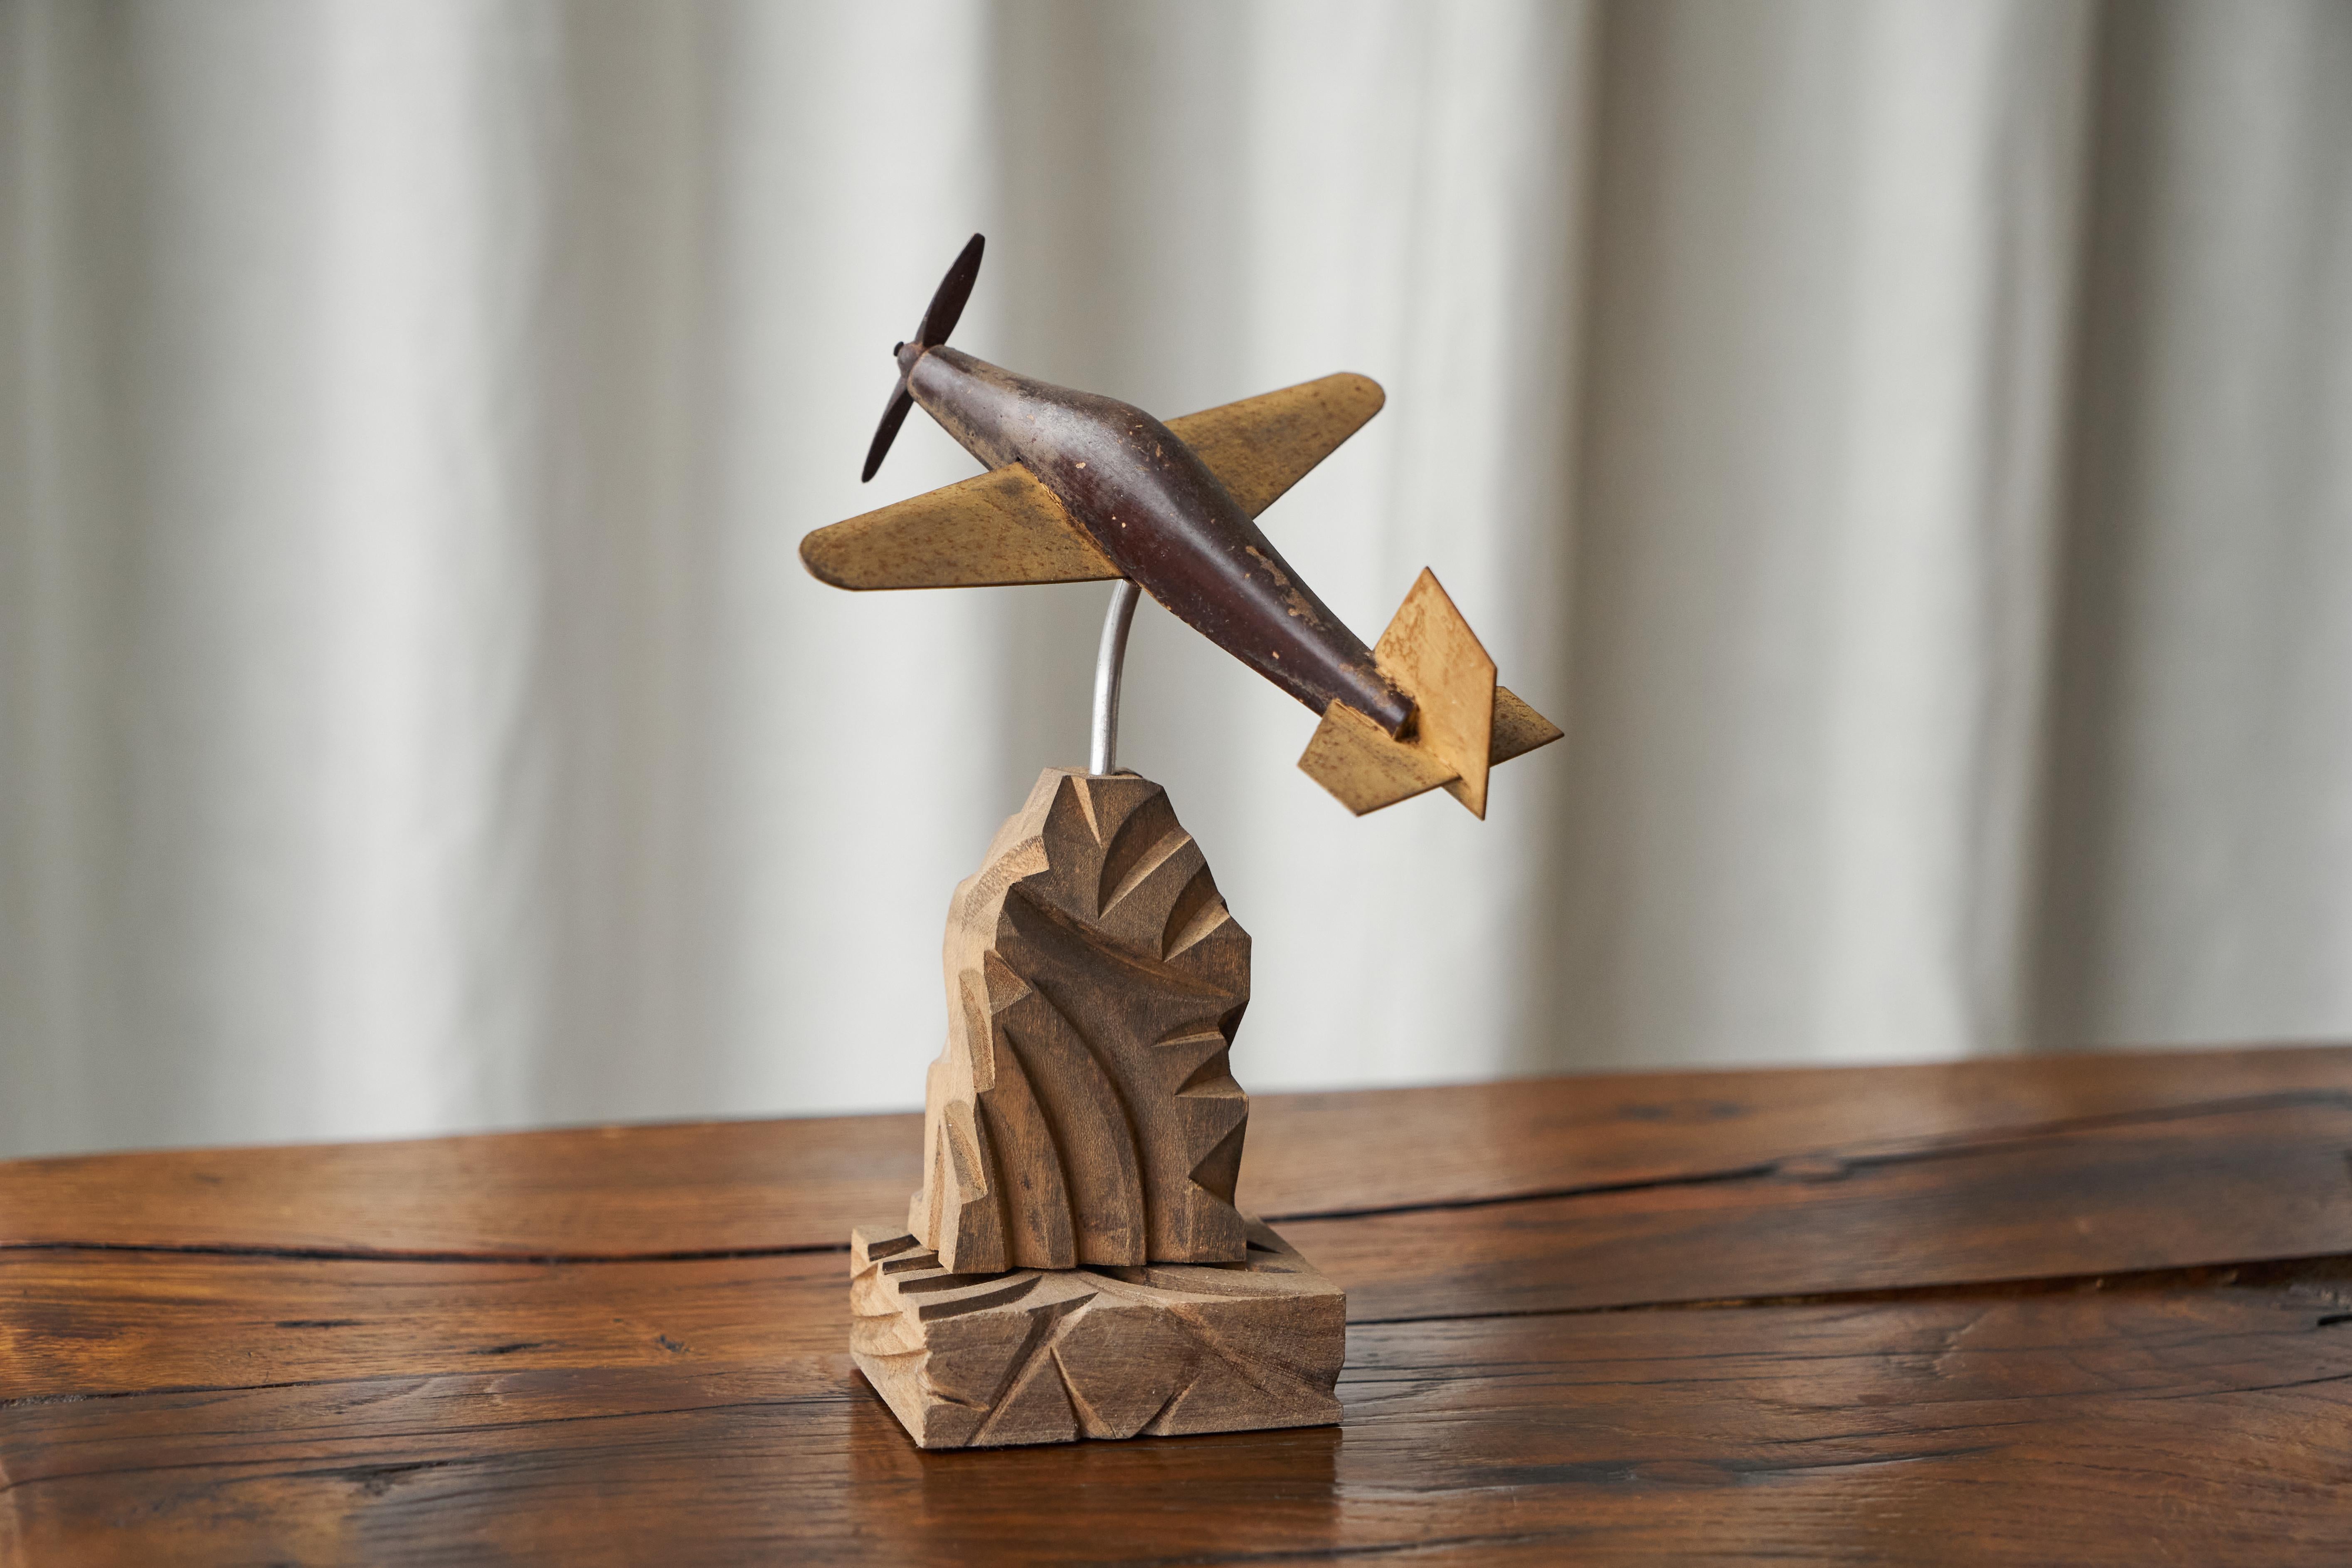 Art Deco Propellerflugzeug aus geschnitztem Holz und Metall

Manchmal findet man ein Stück, das genau richtig ist.... Dieses Art-Déco-Propellerflugzeug ist ein wunderbares Beispiel für ein lustiges und ästhetisches Objekt. Gut gemacht aus Holz und